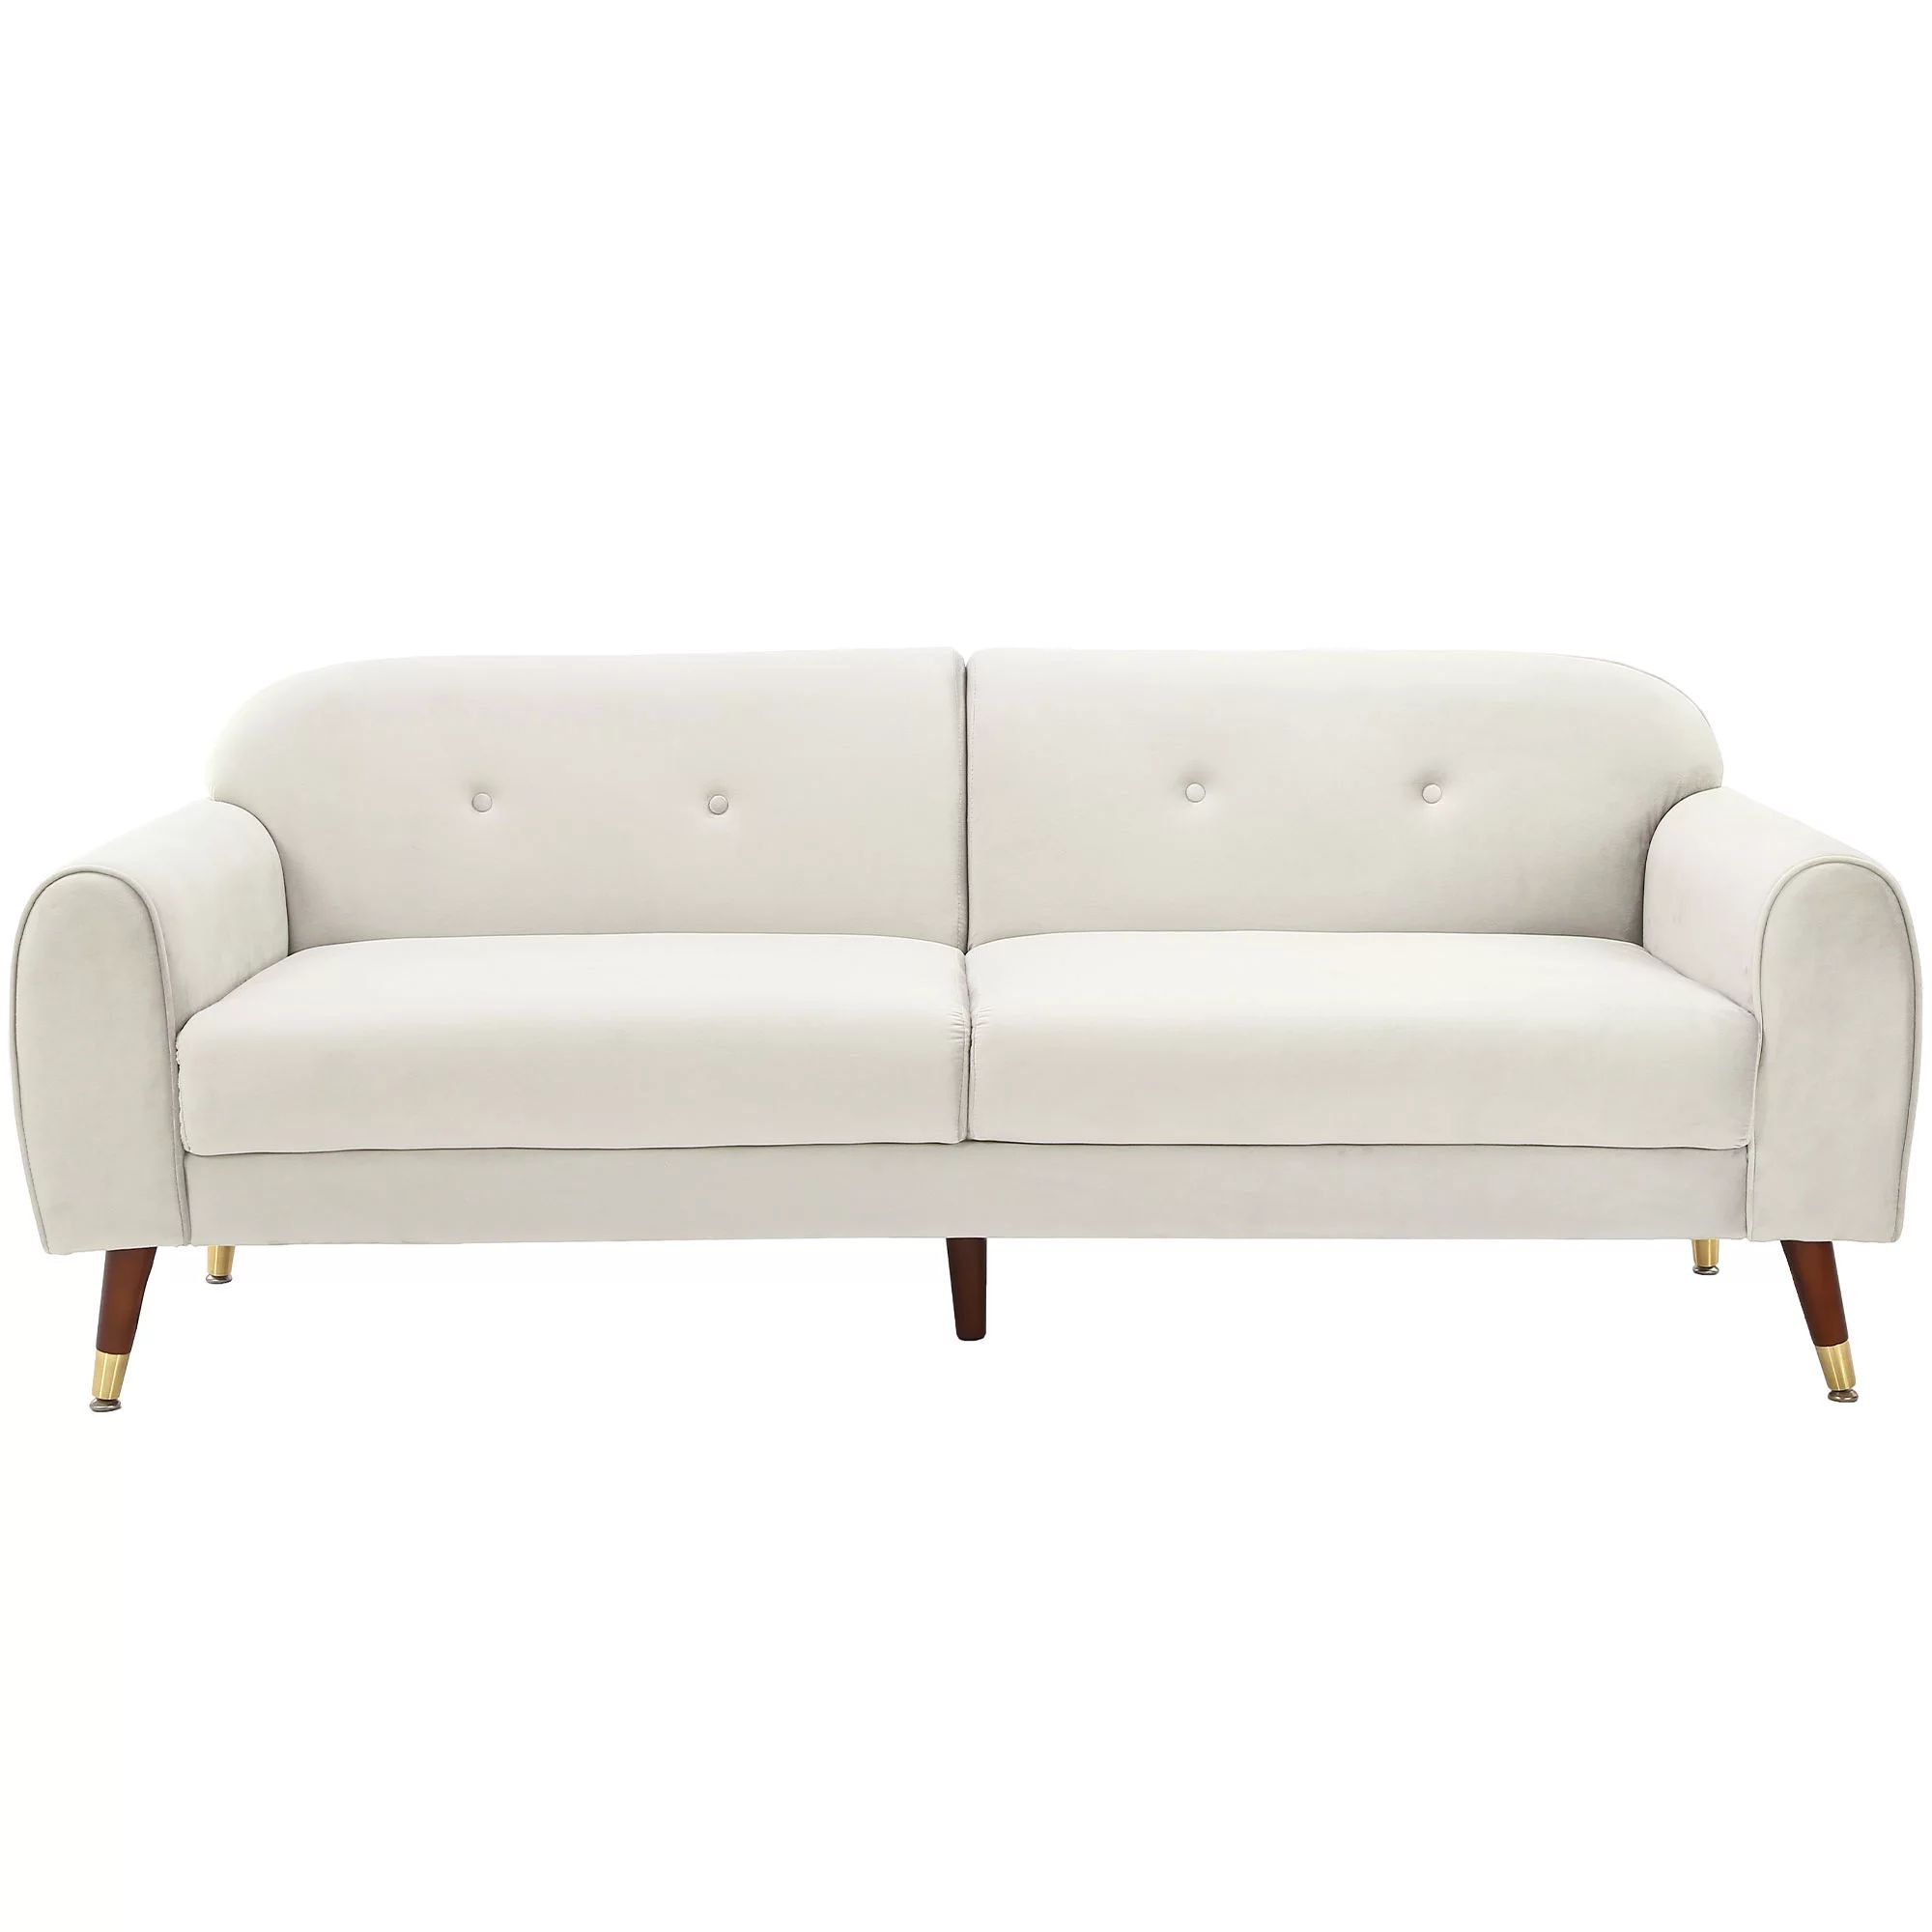 Modstyle Modern Velvet Sofa Couch for Living Room, White 75.5" | Walmart (US)